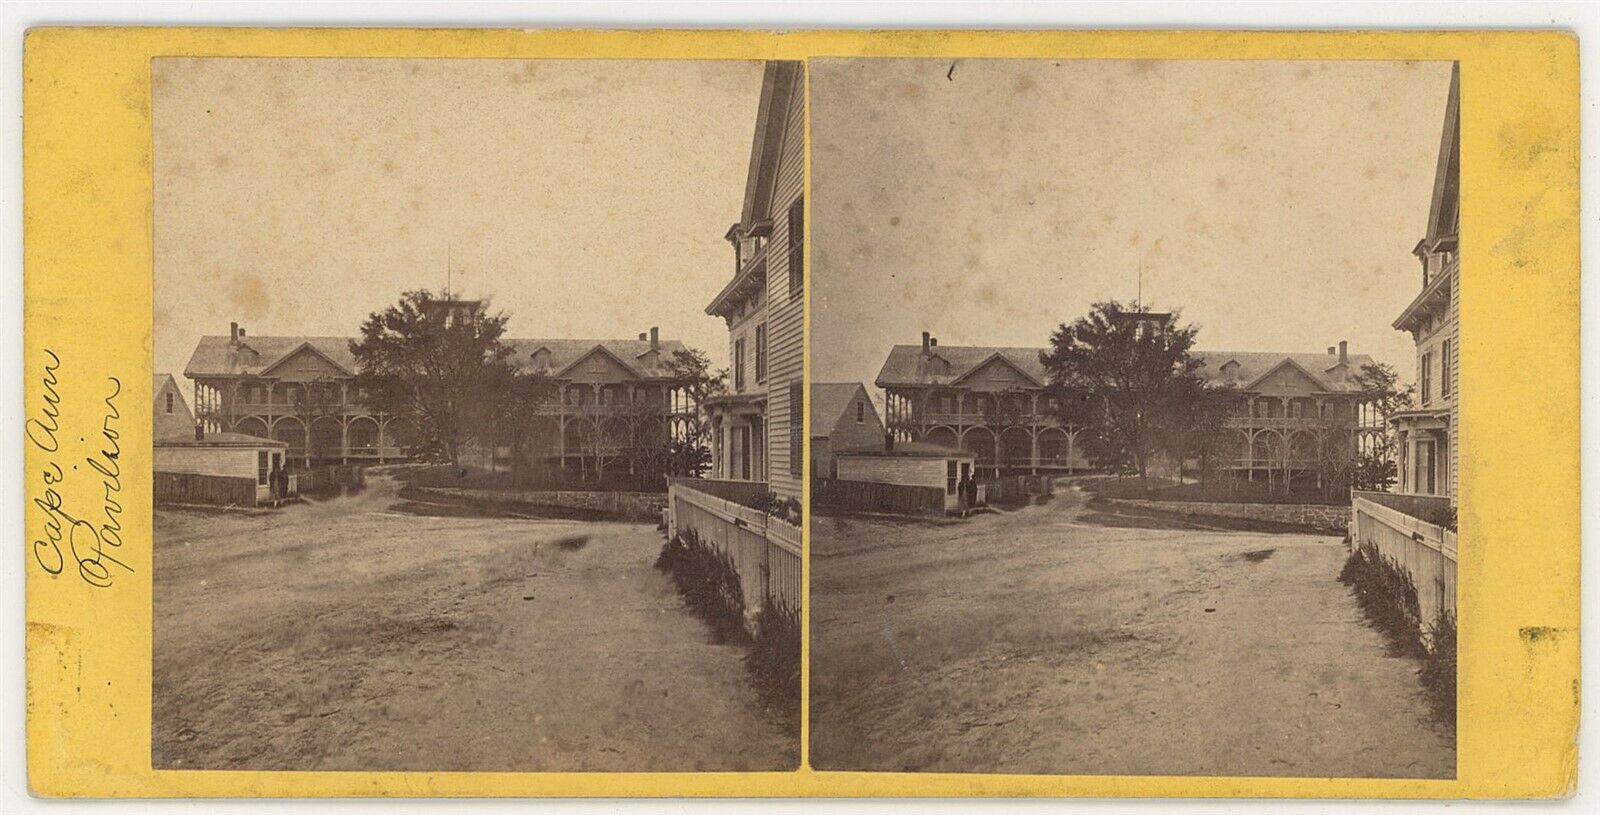 MASSACHUSETTS SV - Cape Ann - Pavilion - Heywood 1860s EARLY